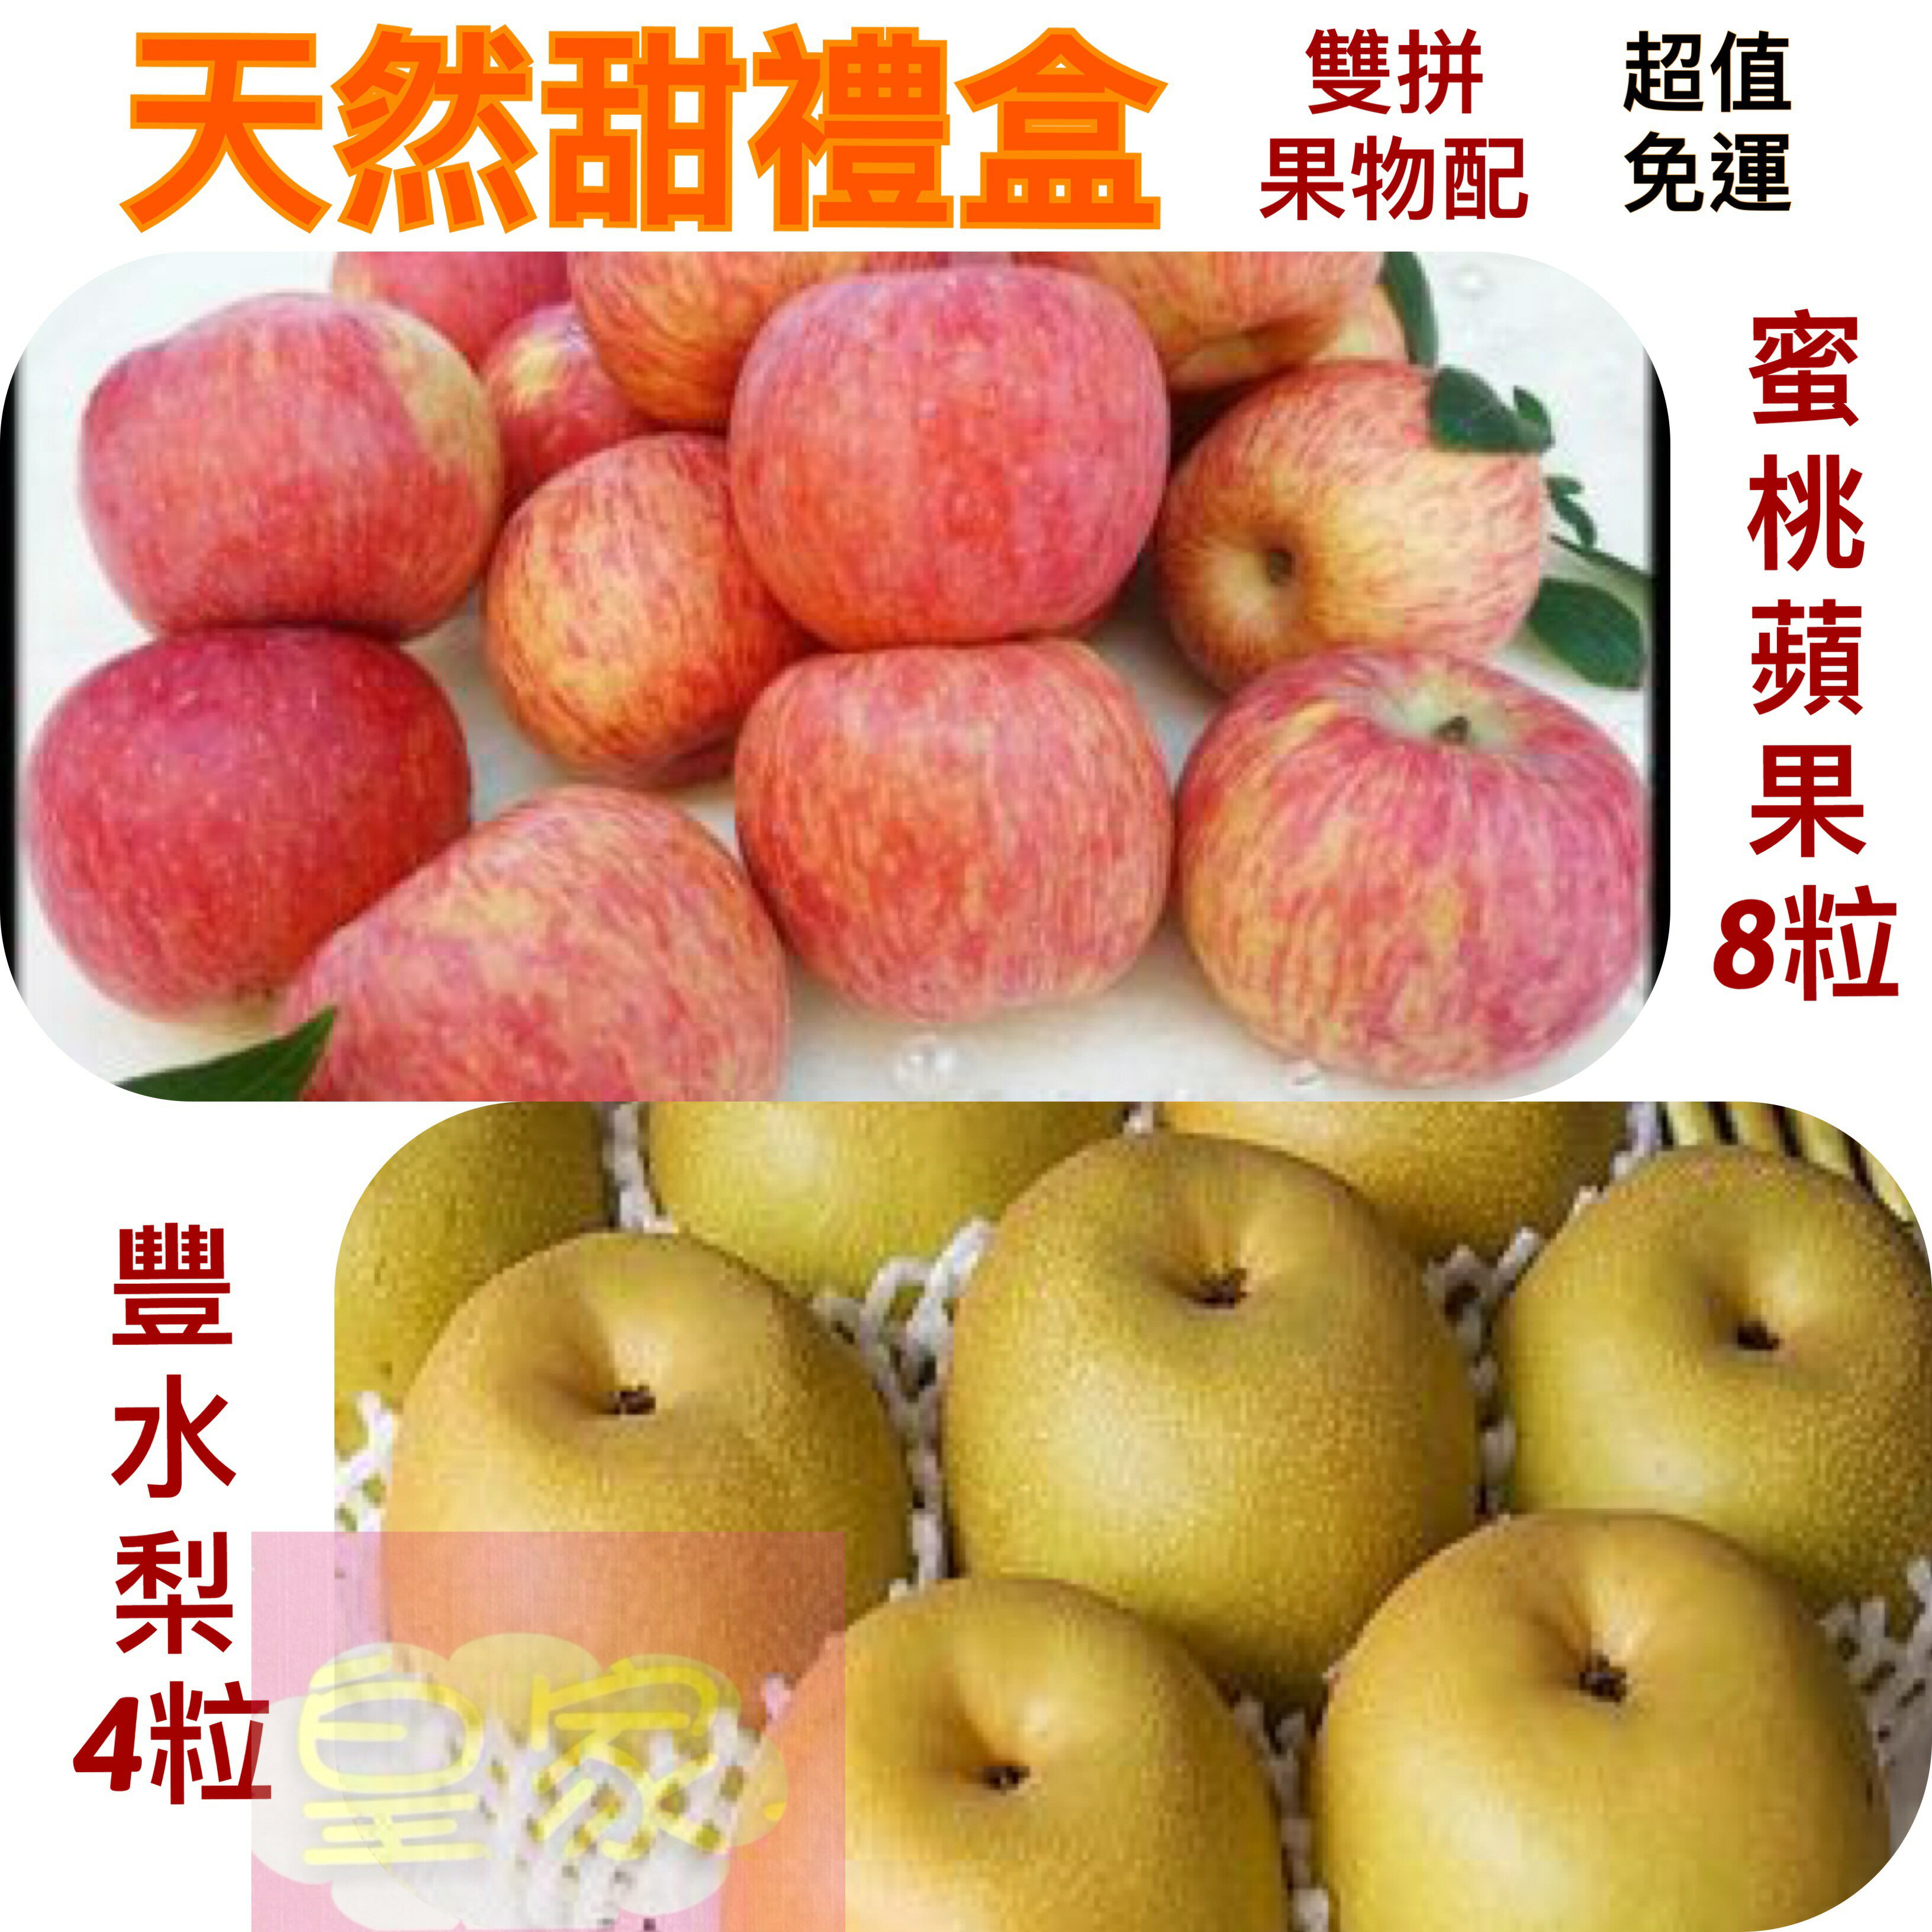 天然甜禮盒〈蜜桃蘋果8粒+豐水梨4粒〉低溫免運【皇家果物】